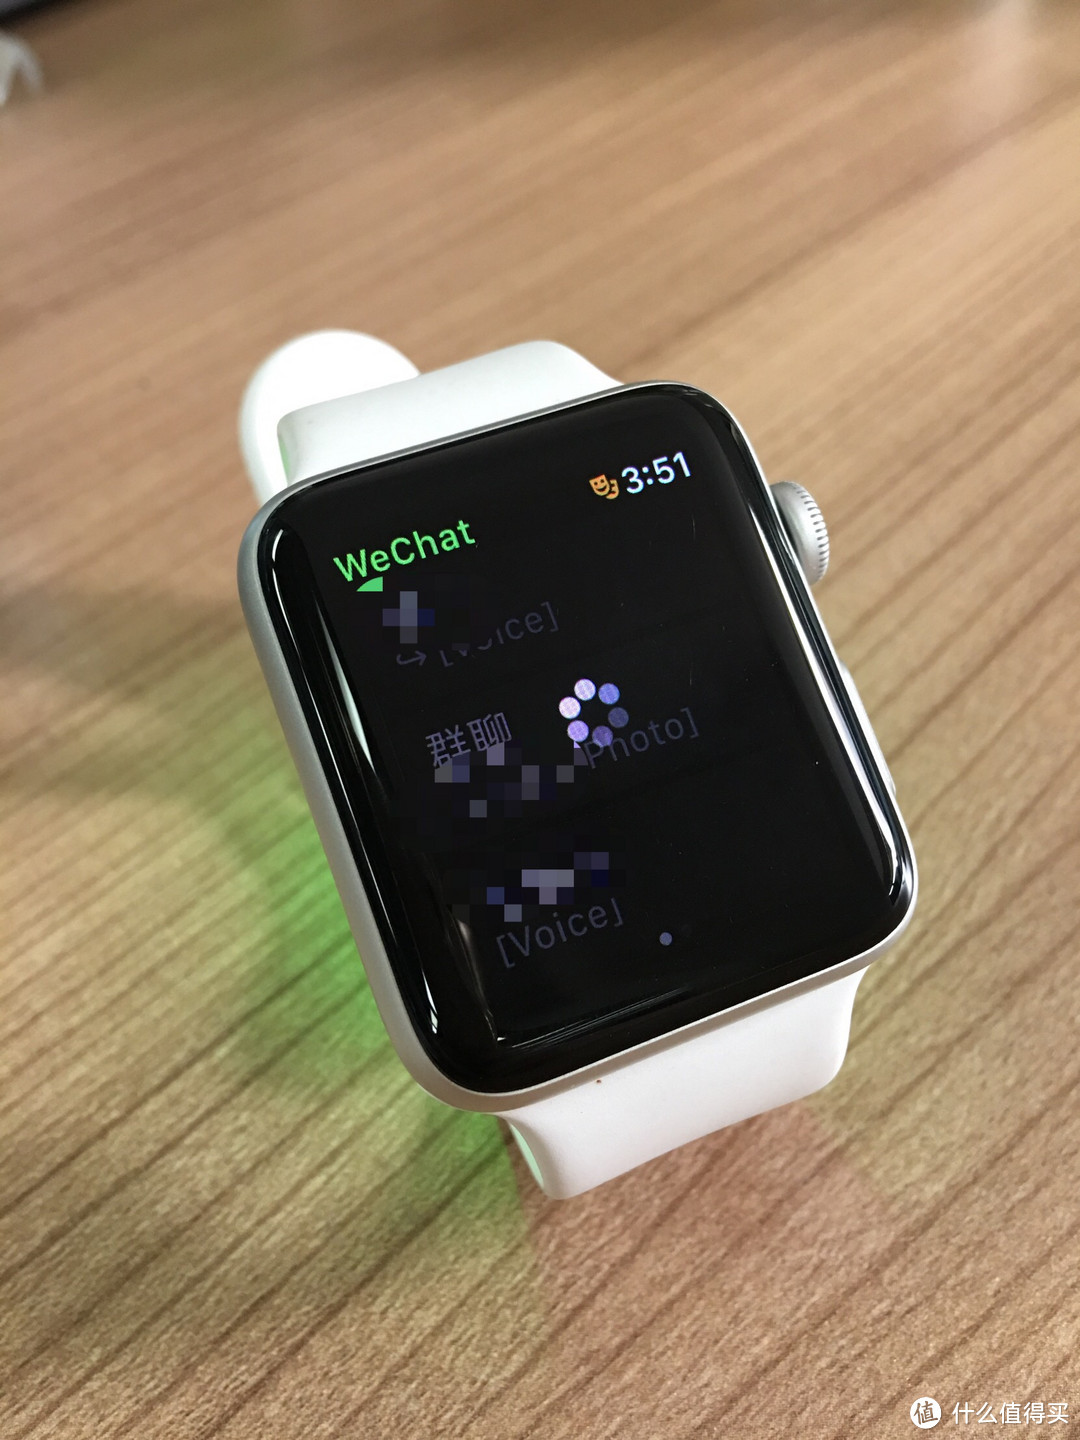 AppleWatch 2 苹果手表 简单使用评价